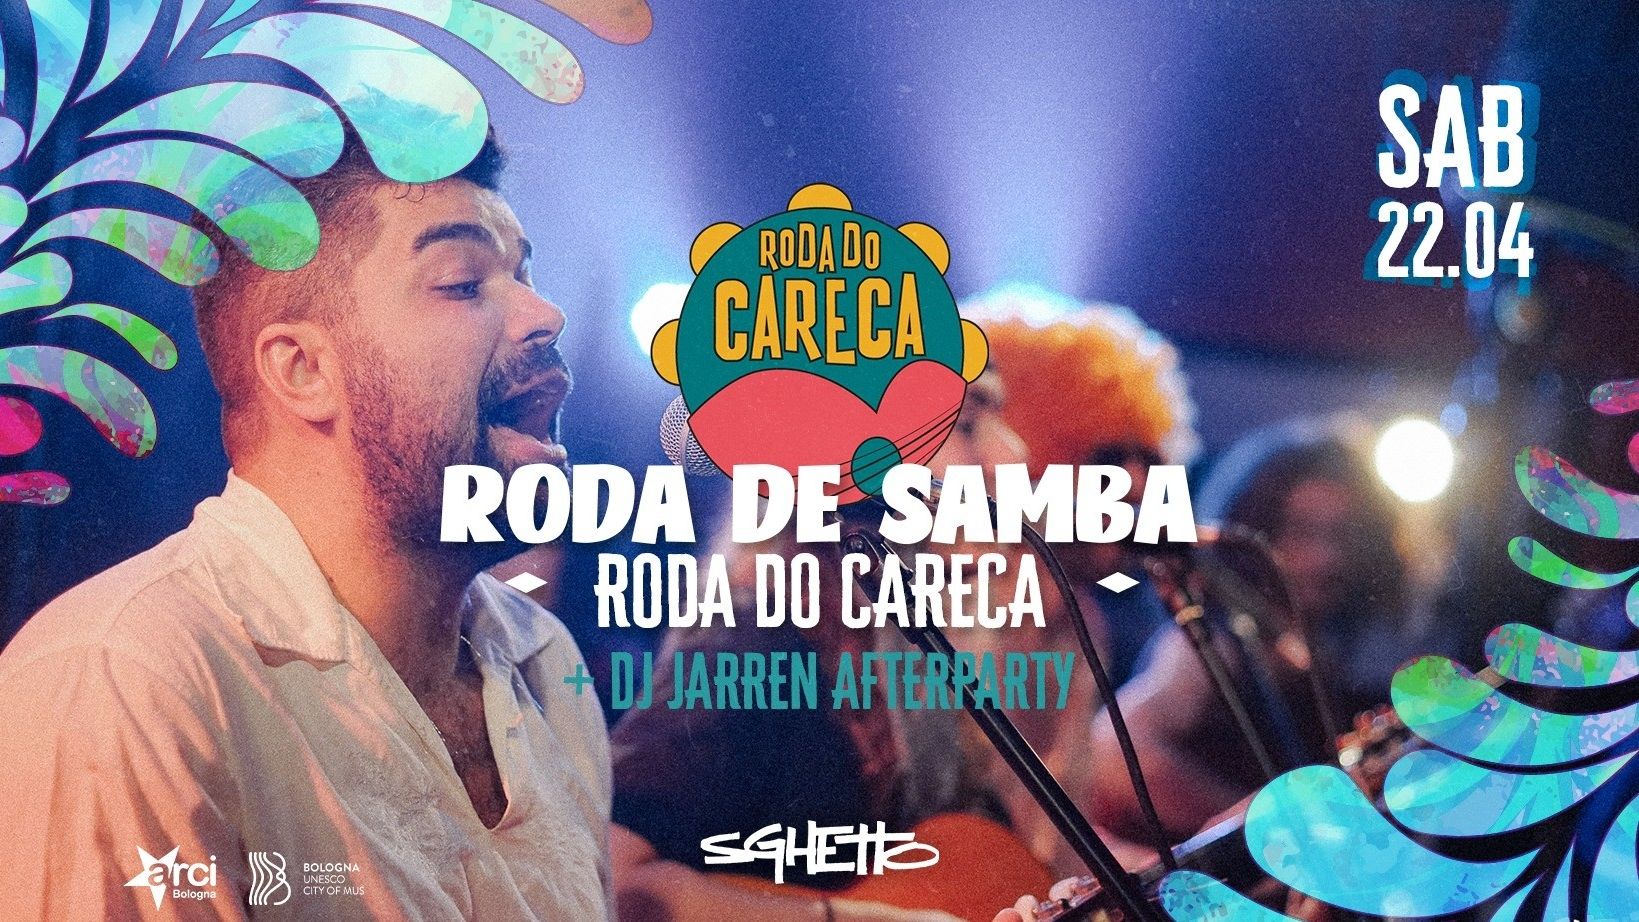 Roda de Samba do Careca + Afterparty con Jarren